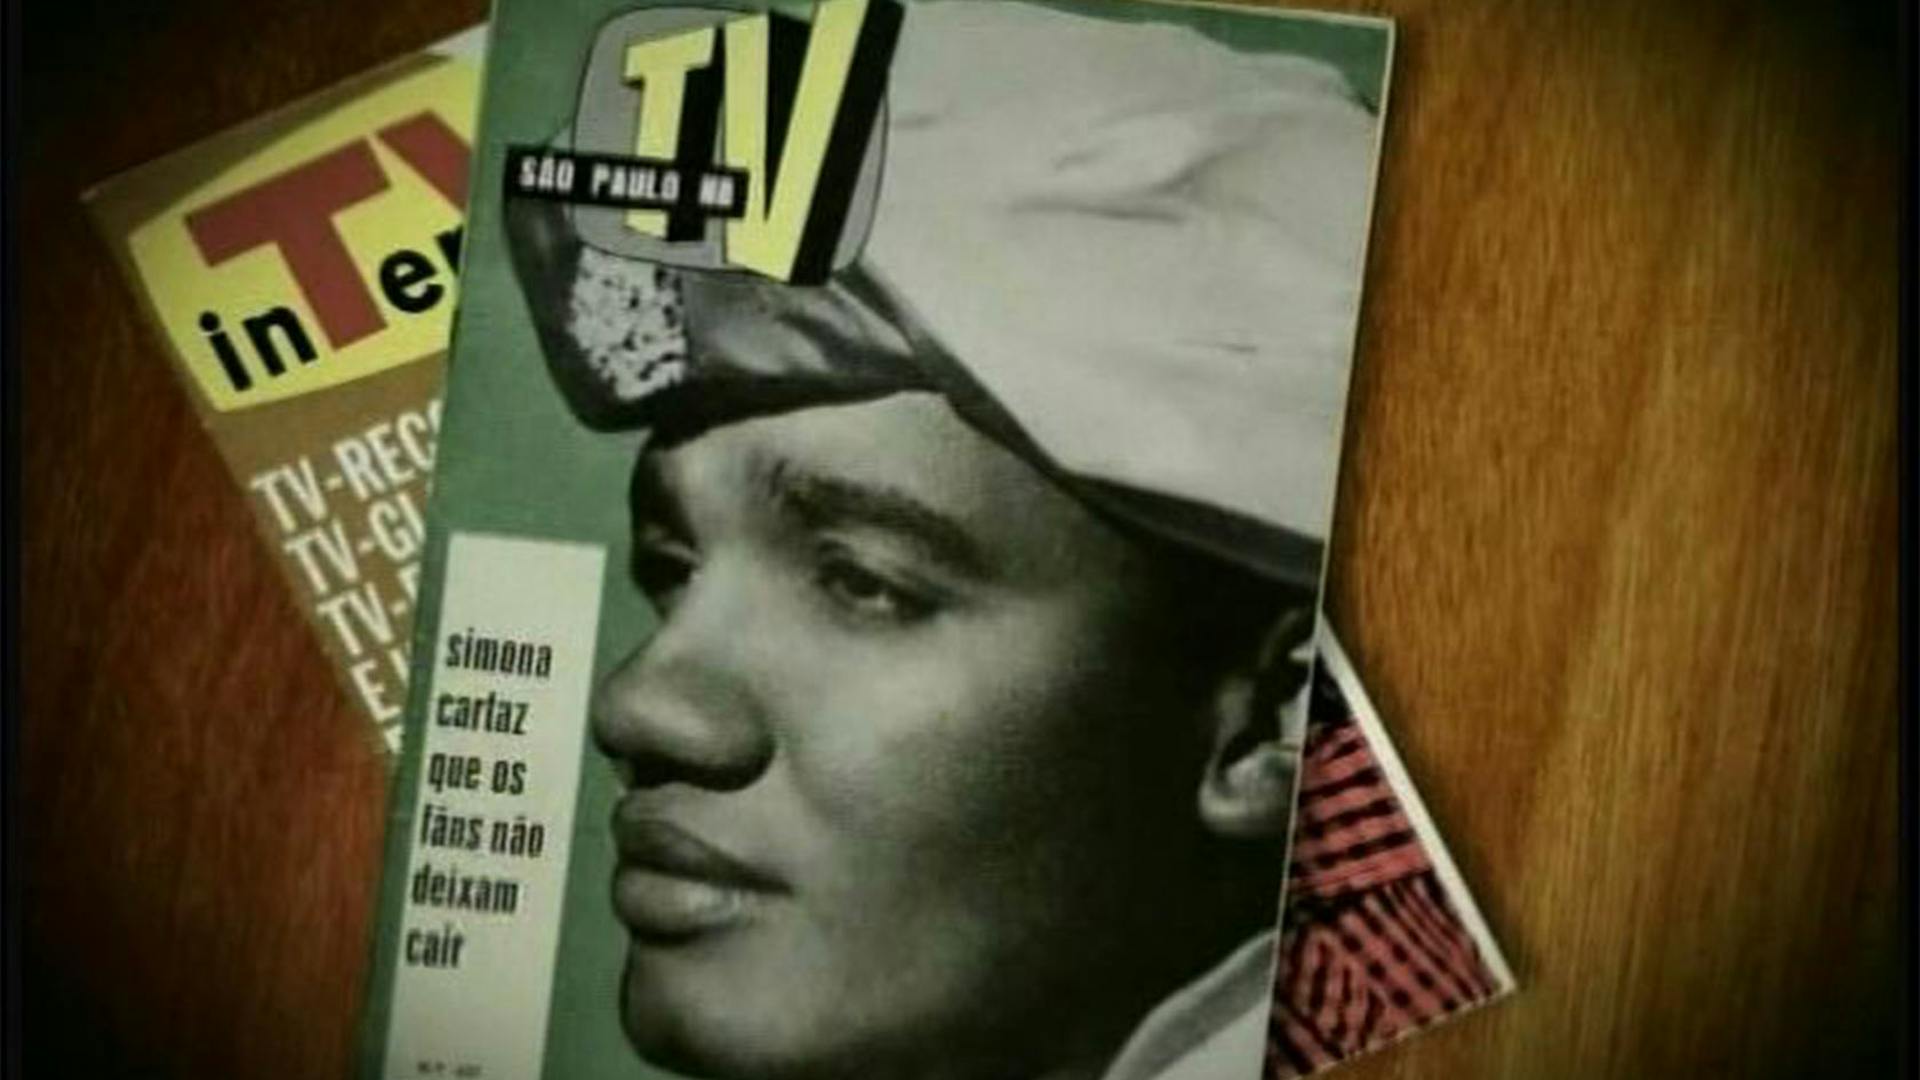 Diversas revistas sobre uma mesa de madeira, com a capa em destaque mostrando uma foto preto e branco, com fundo verde, com o rosto de Simonal de lado olhando para esquerda